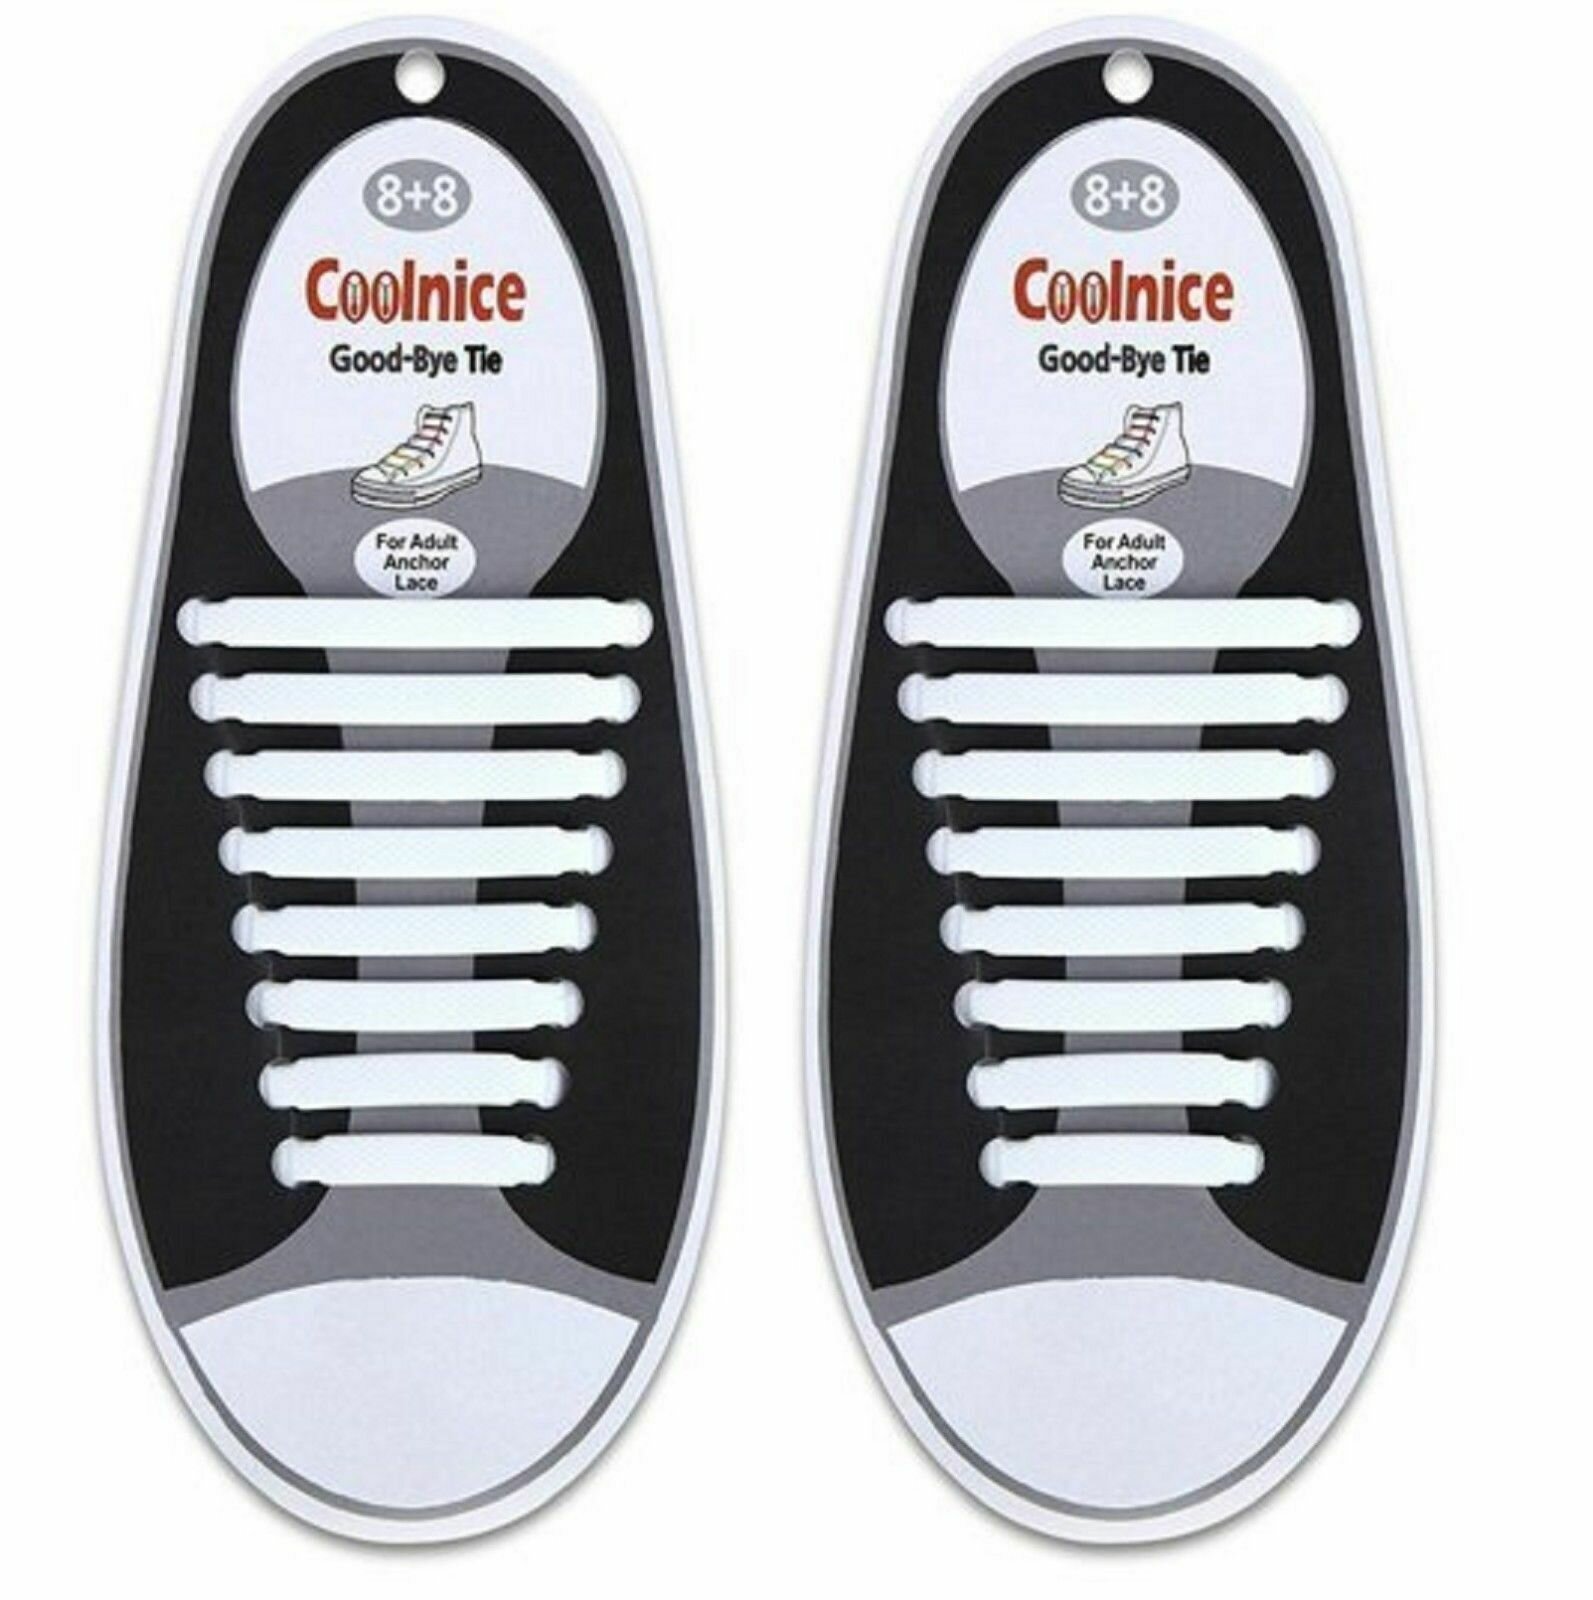 Шнурки резинки силиконовые для обуви - Цвет белые - Плоские - Количество шнурков в комплекте 16 шт, 8 пар - Шнурки резиновые - Шнурки эластичные